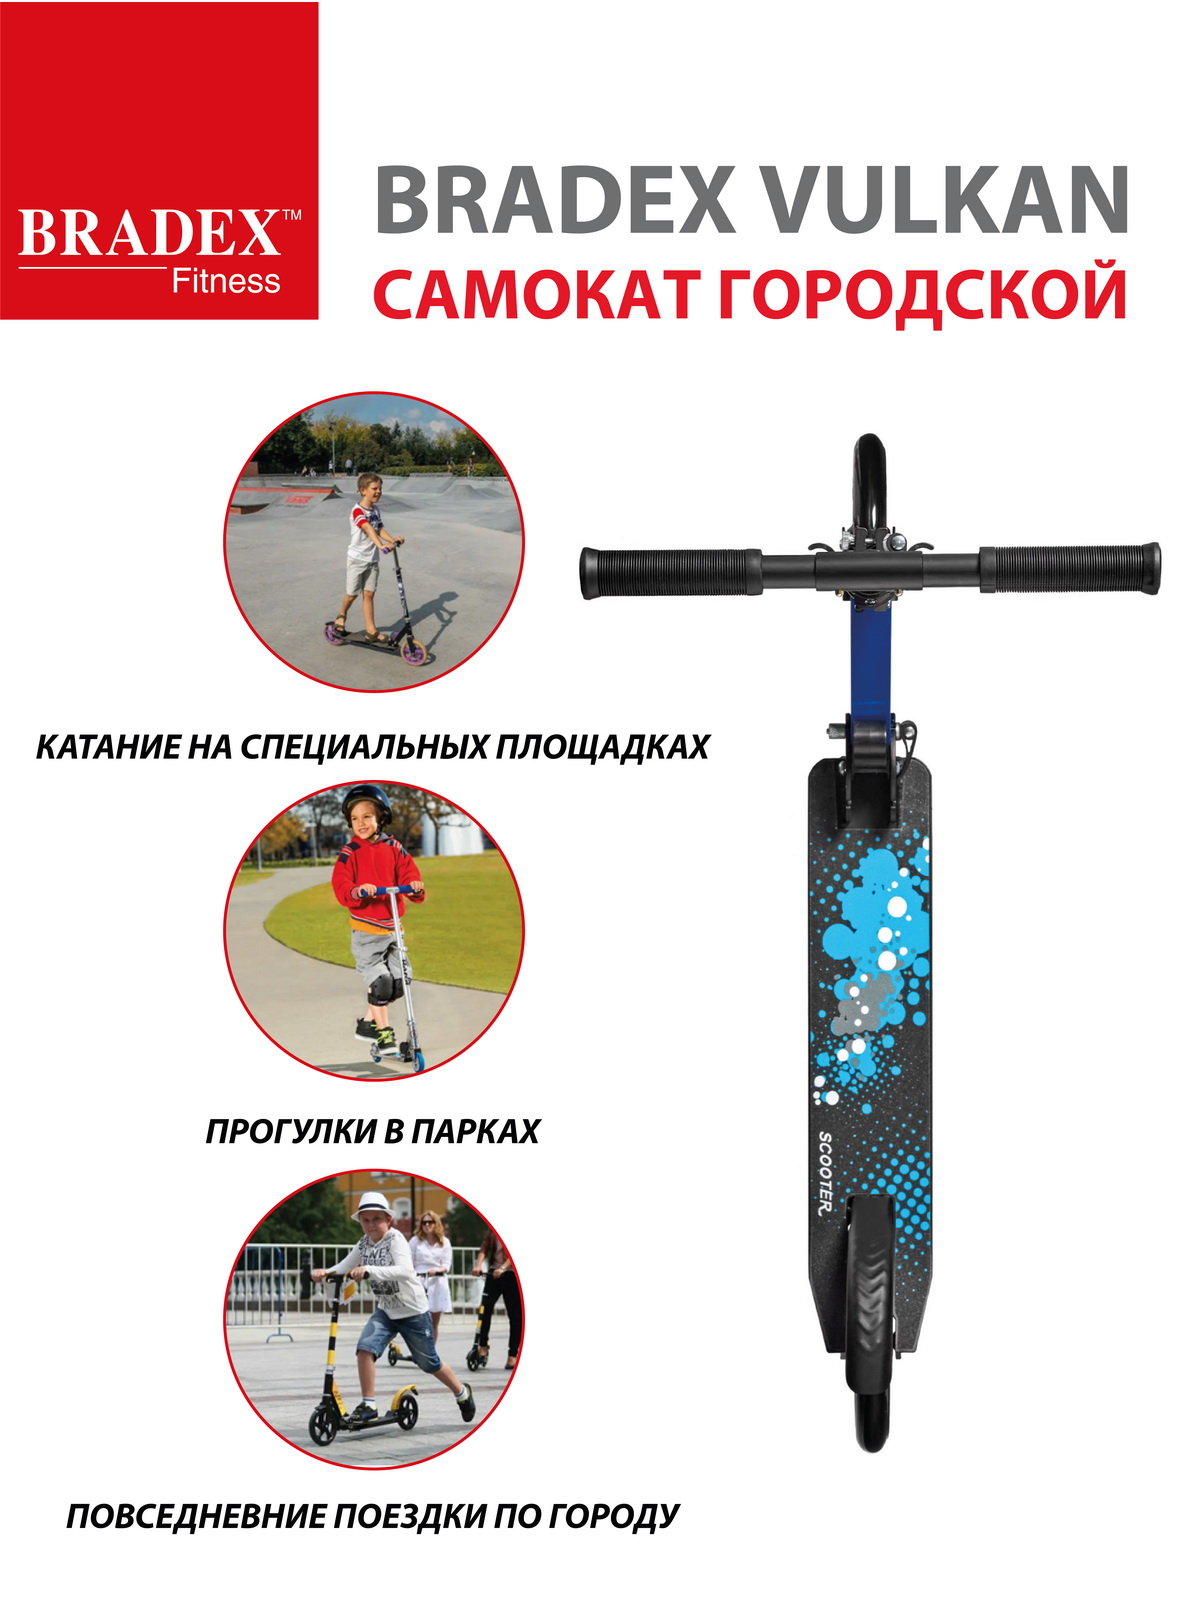 Самокат Bradex городской колеса 200 мм VULKAN - фото 6